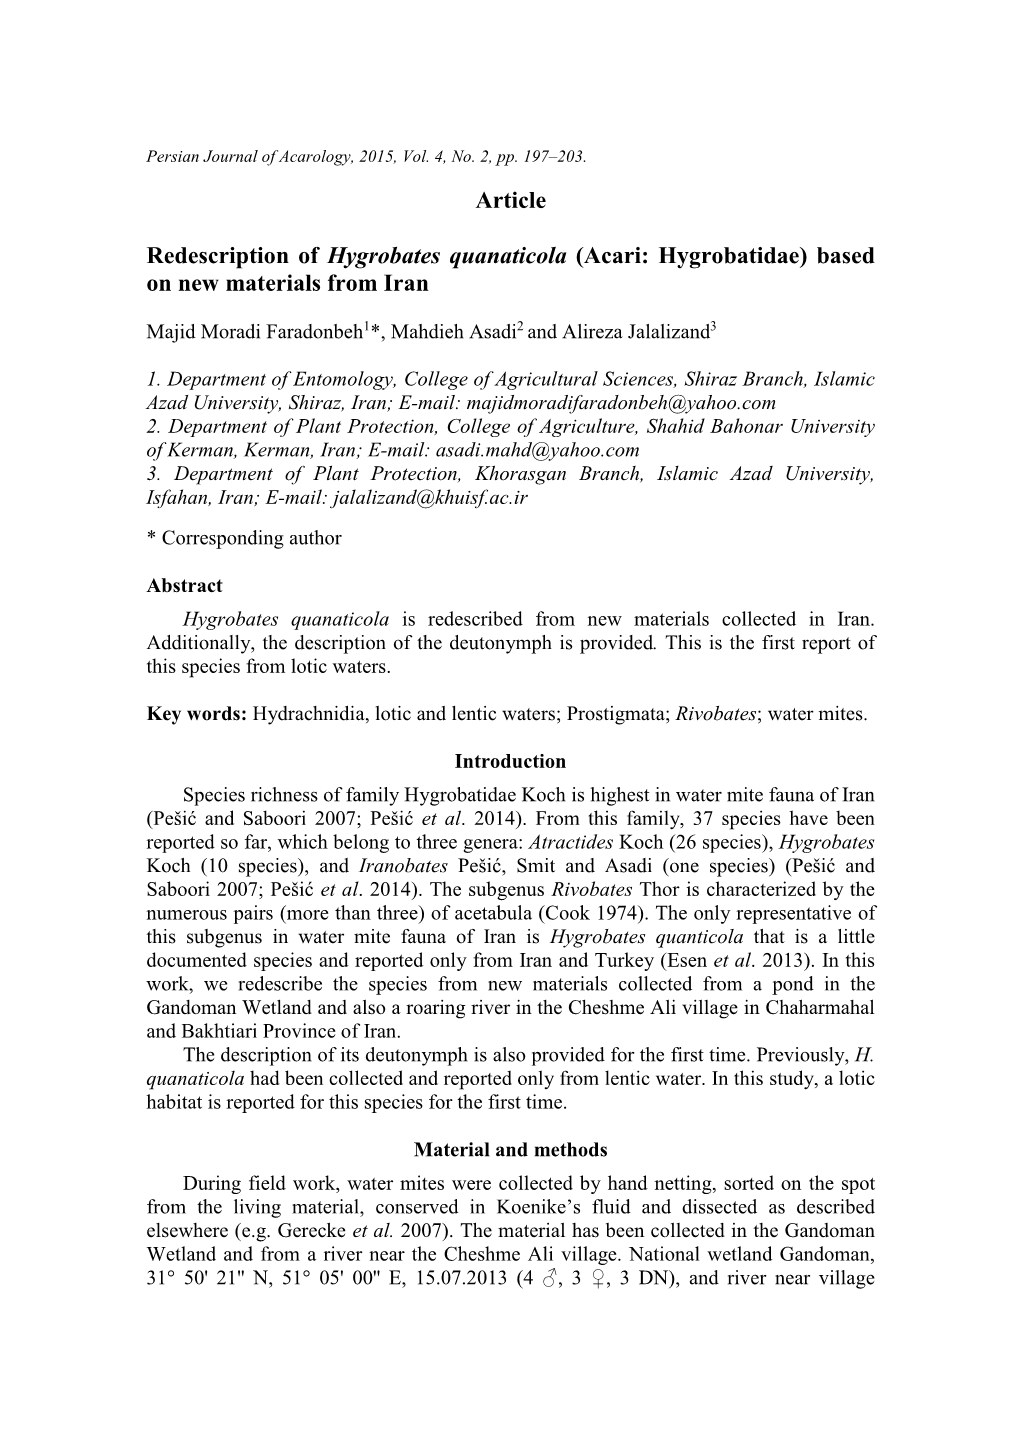 Article Redescription of Hygrobates Quanaticola (Acari: Hygrobatidae)